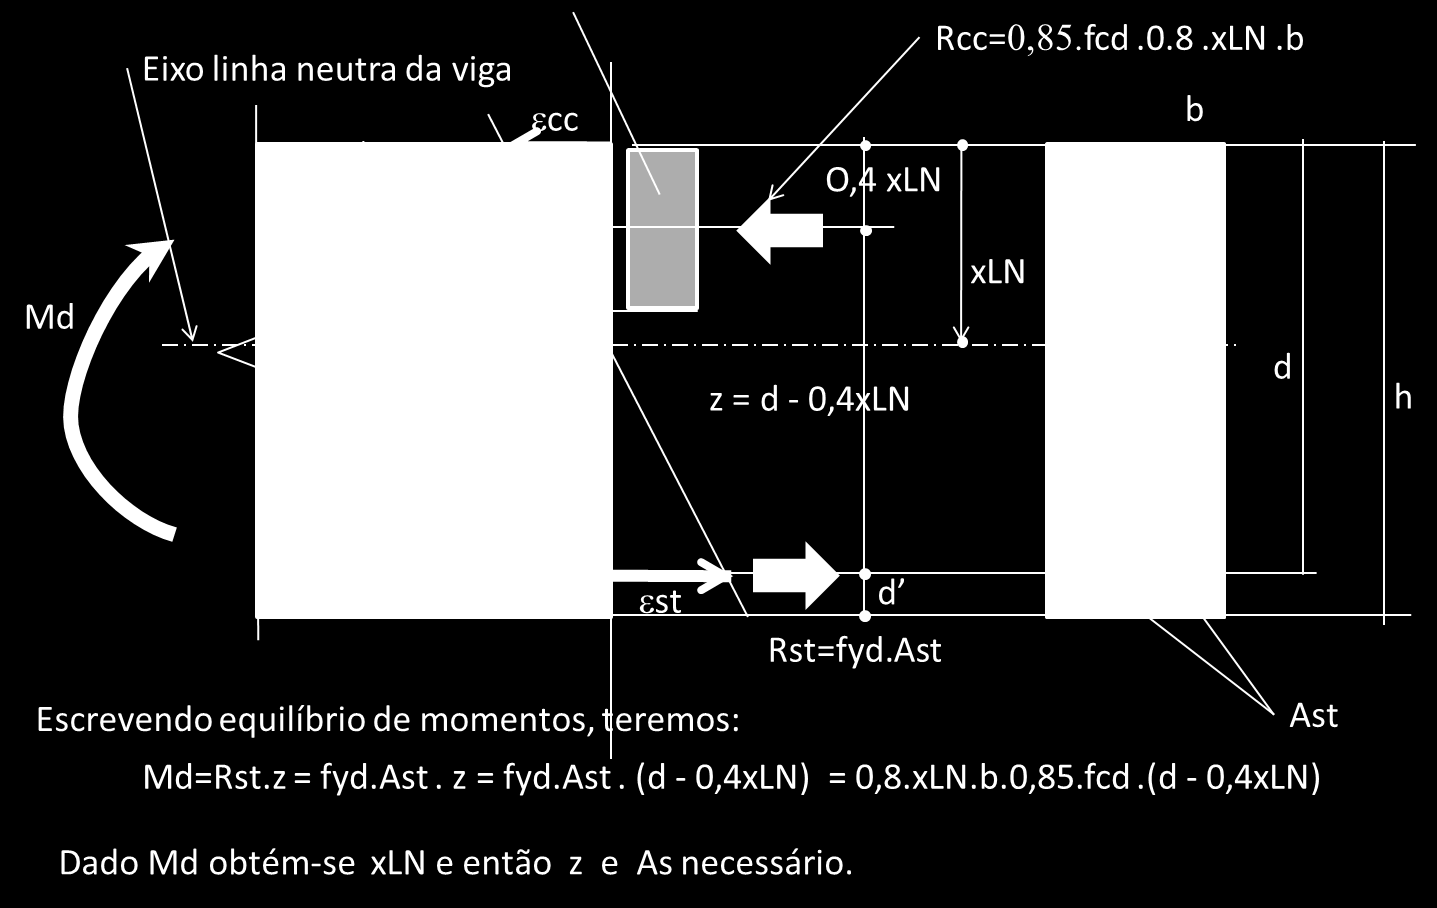 Com isso em mente, considere-se agora a Figura 4, que apresenta as definições básicas para o cálculo de momento fletor resistente de uma viga de concreto armado de seção retangular com armadura